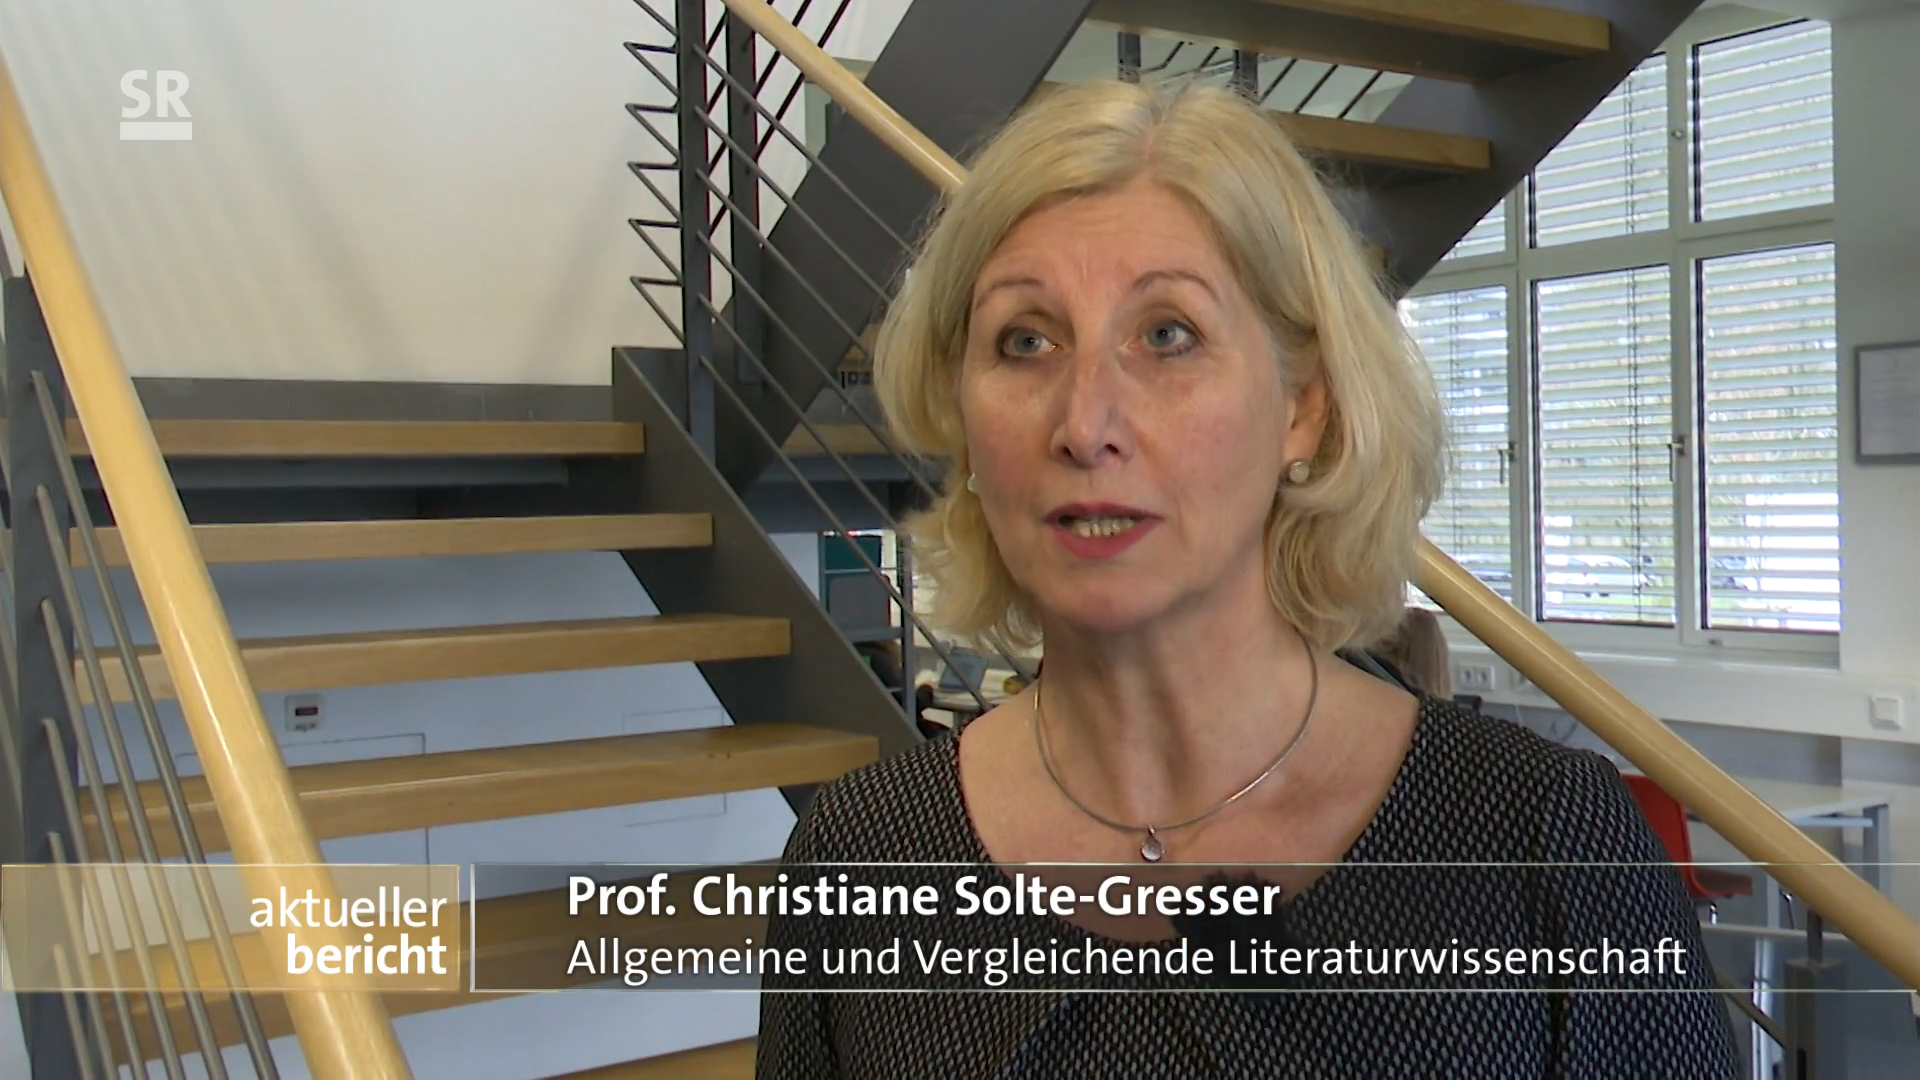 Prof. Dr. Christiane Solte-Gresser wird im aktuellen Bericht interviewt.